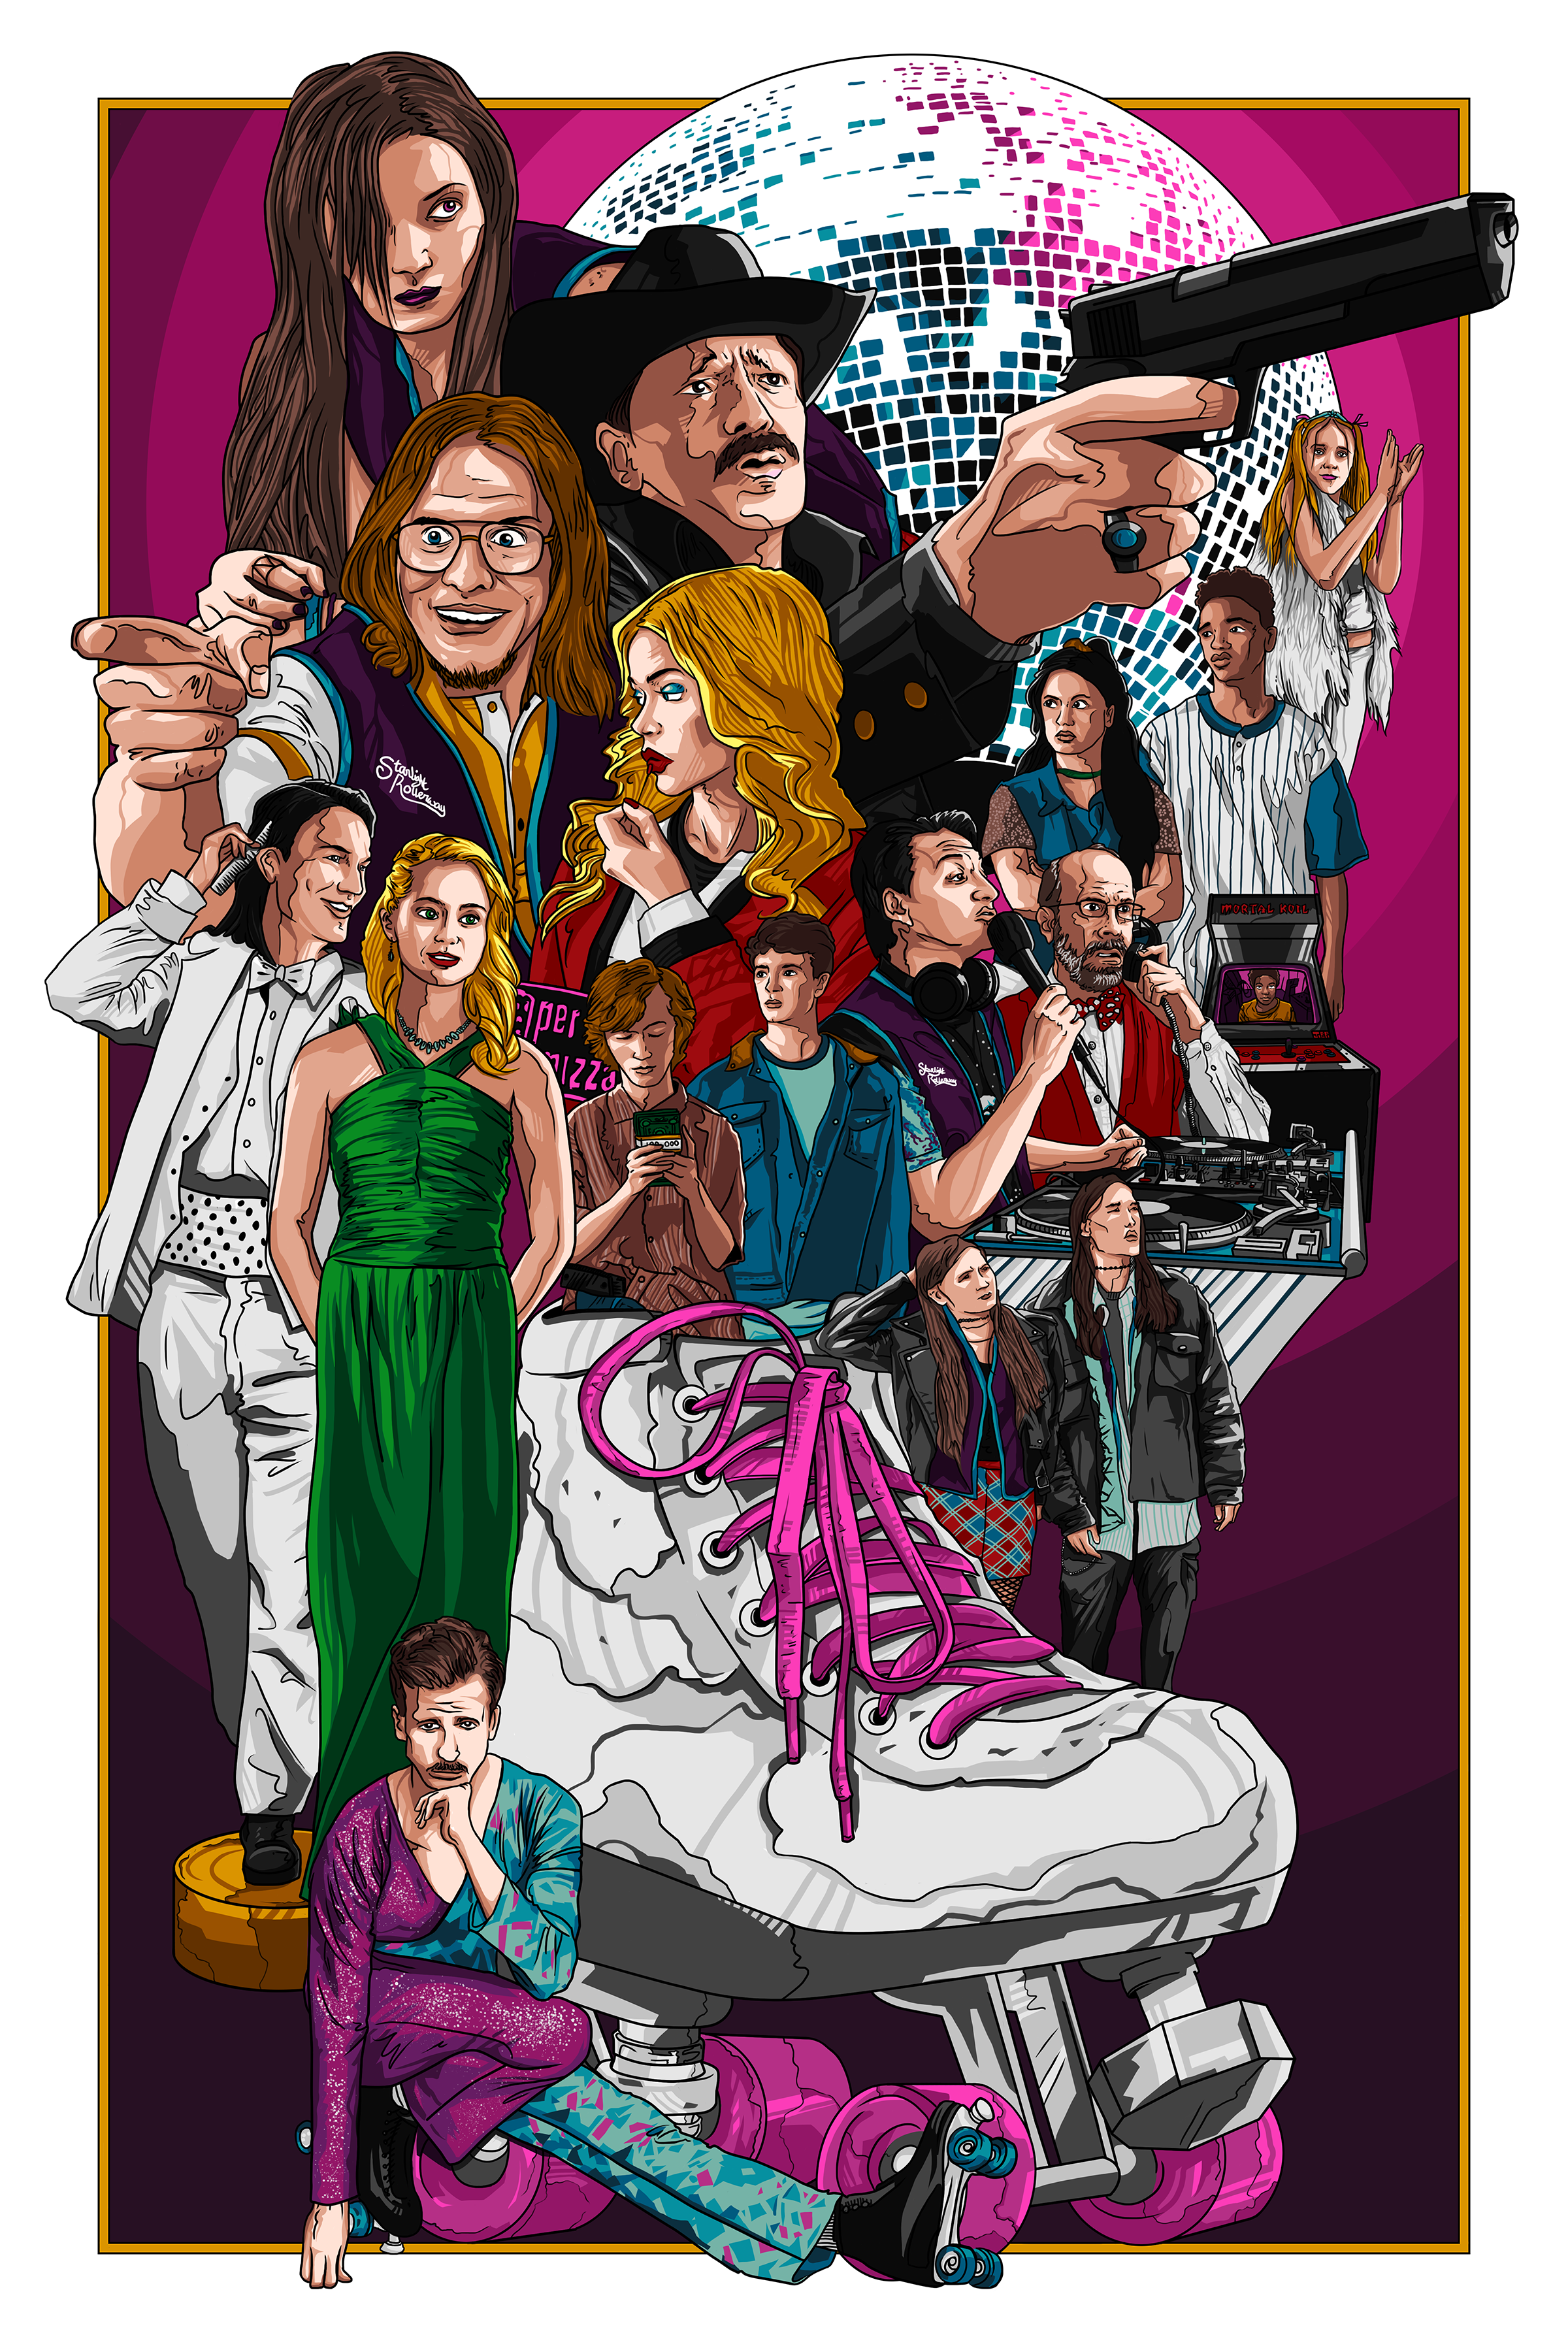 Stranger Things 4 - TV Show Poster (Regular One Sheet Season 4